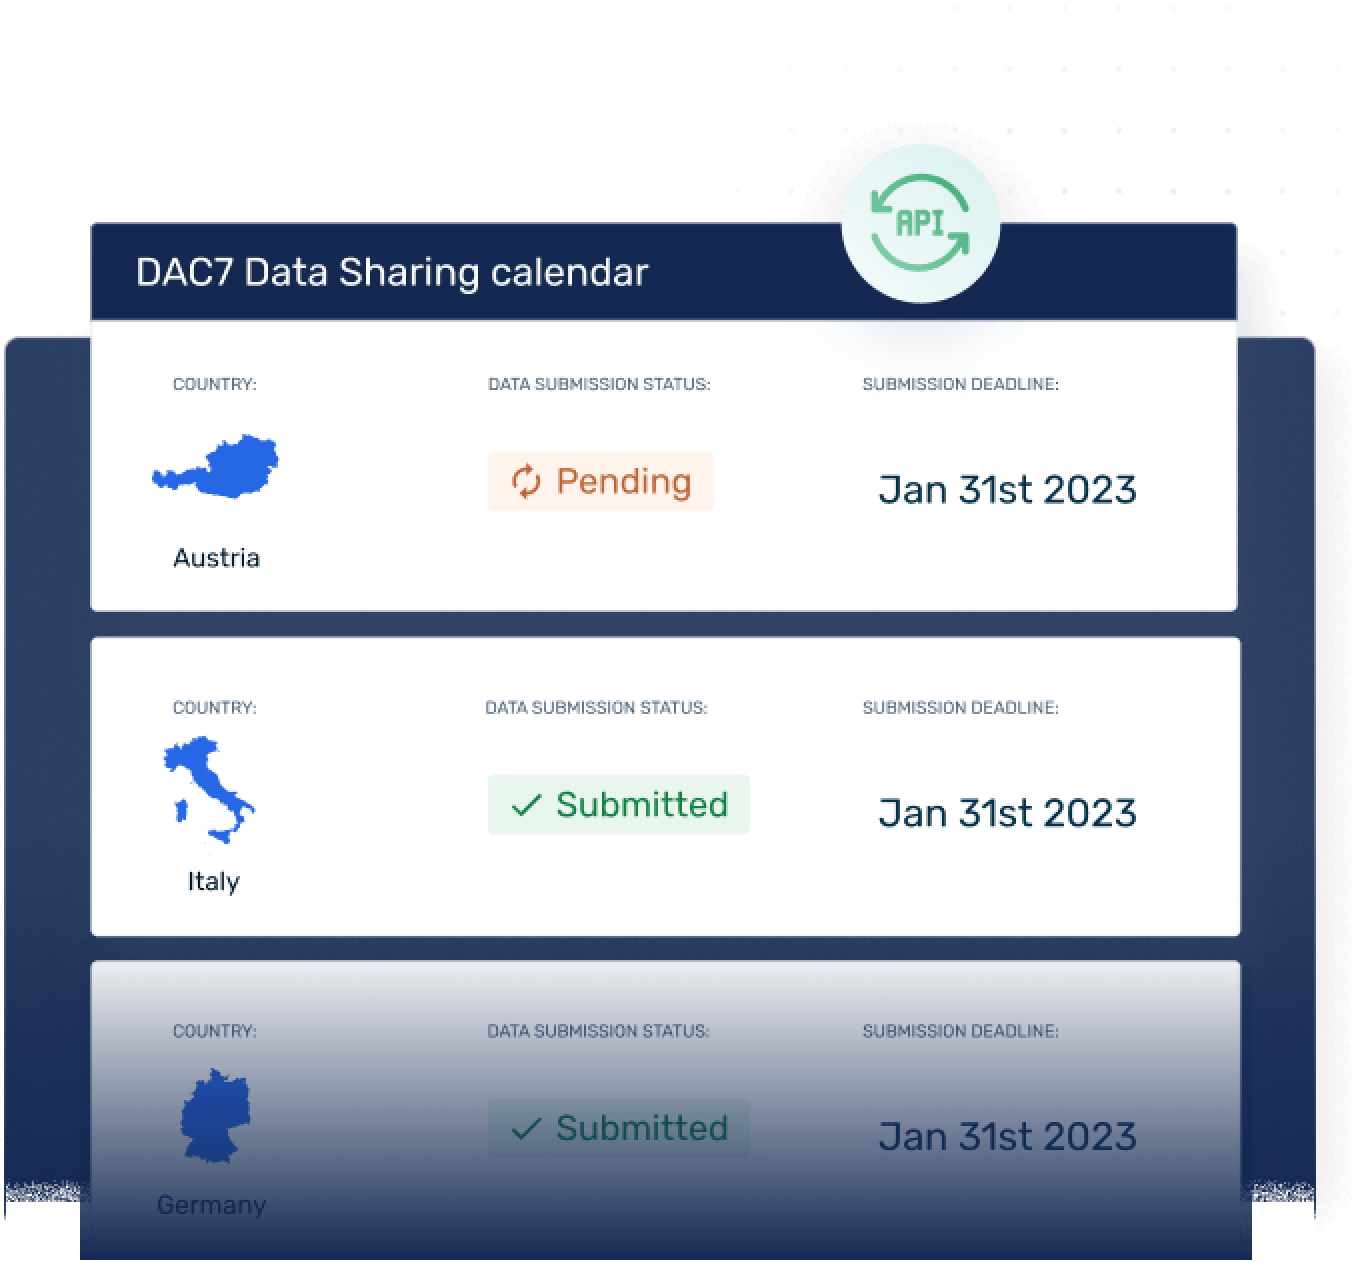 DAC7 Data Sharing calendar screen